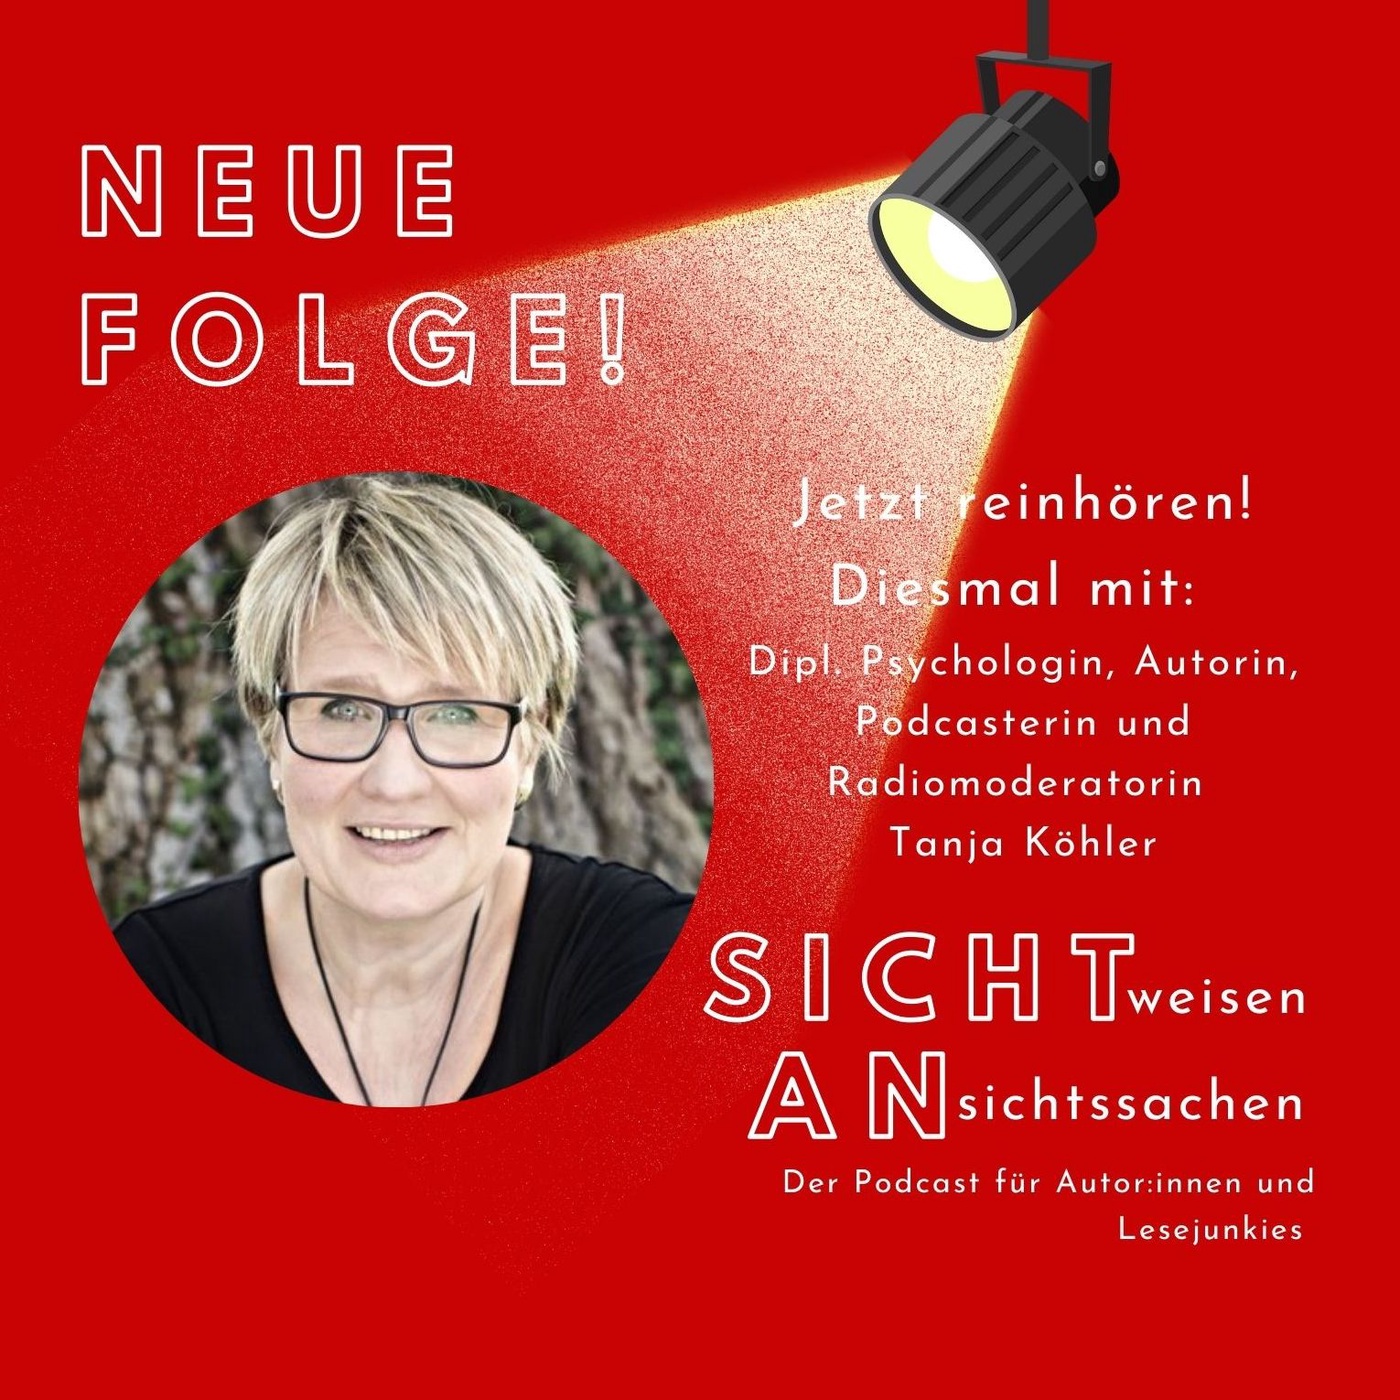 Tanja Köhler - von der Autorin zur eigenen Radiosendung